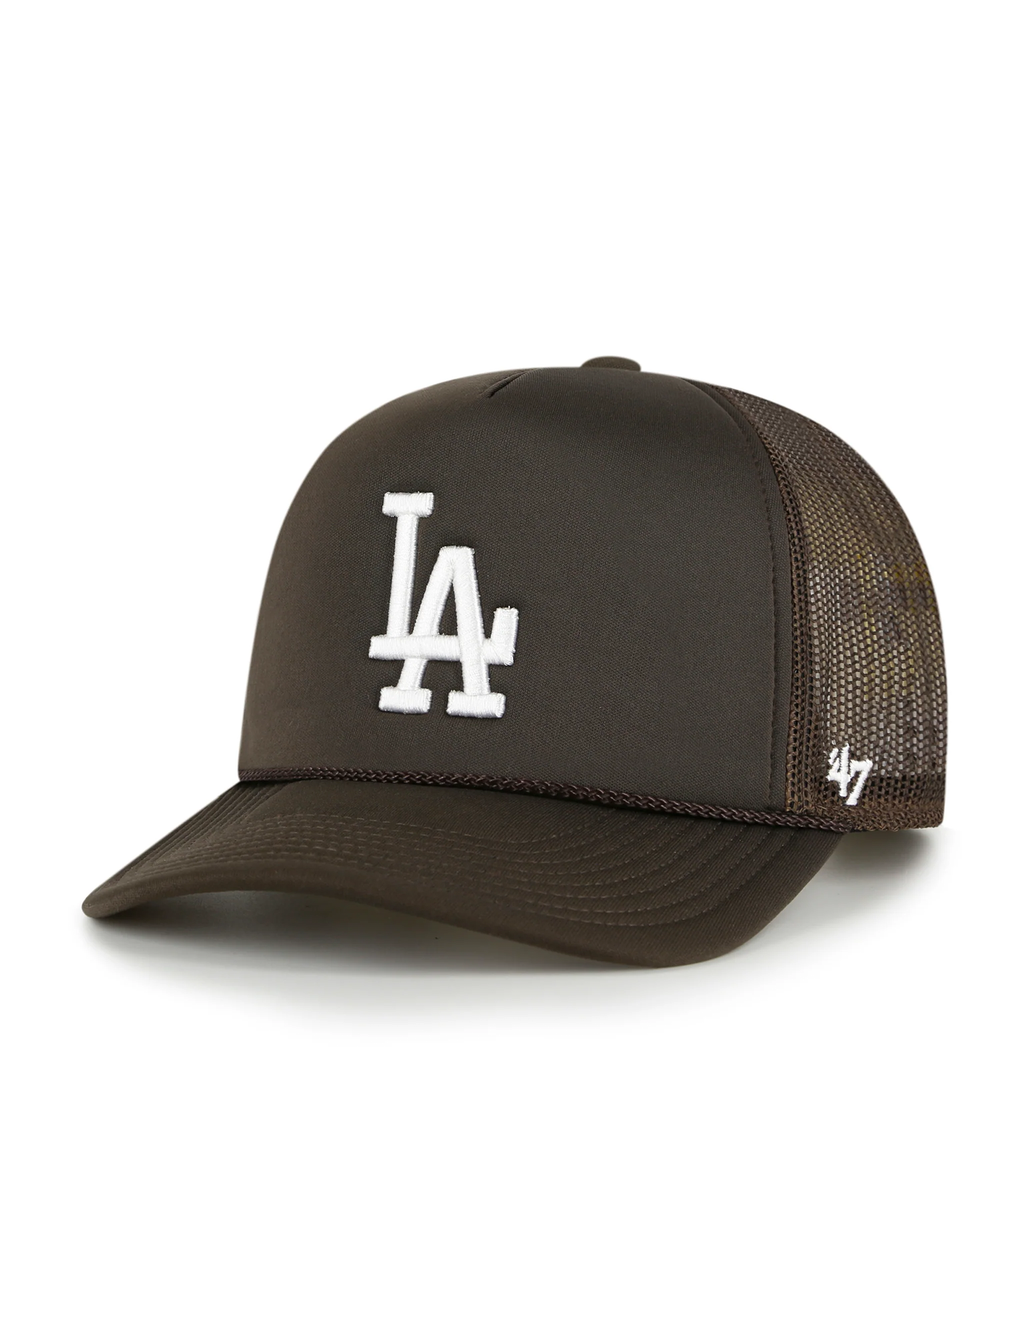 LA Dodgers Foam Mesh Trucker Hat, Brown/White